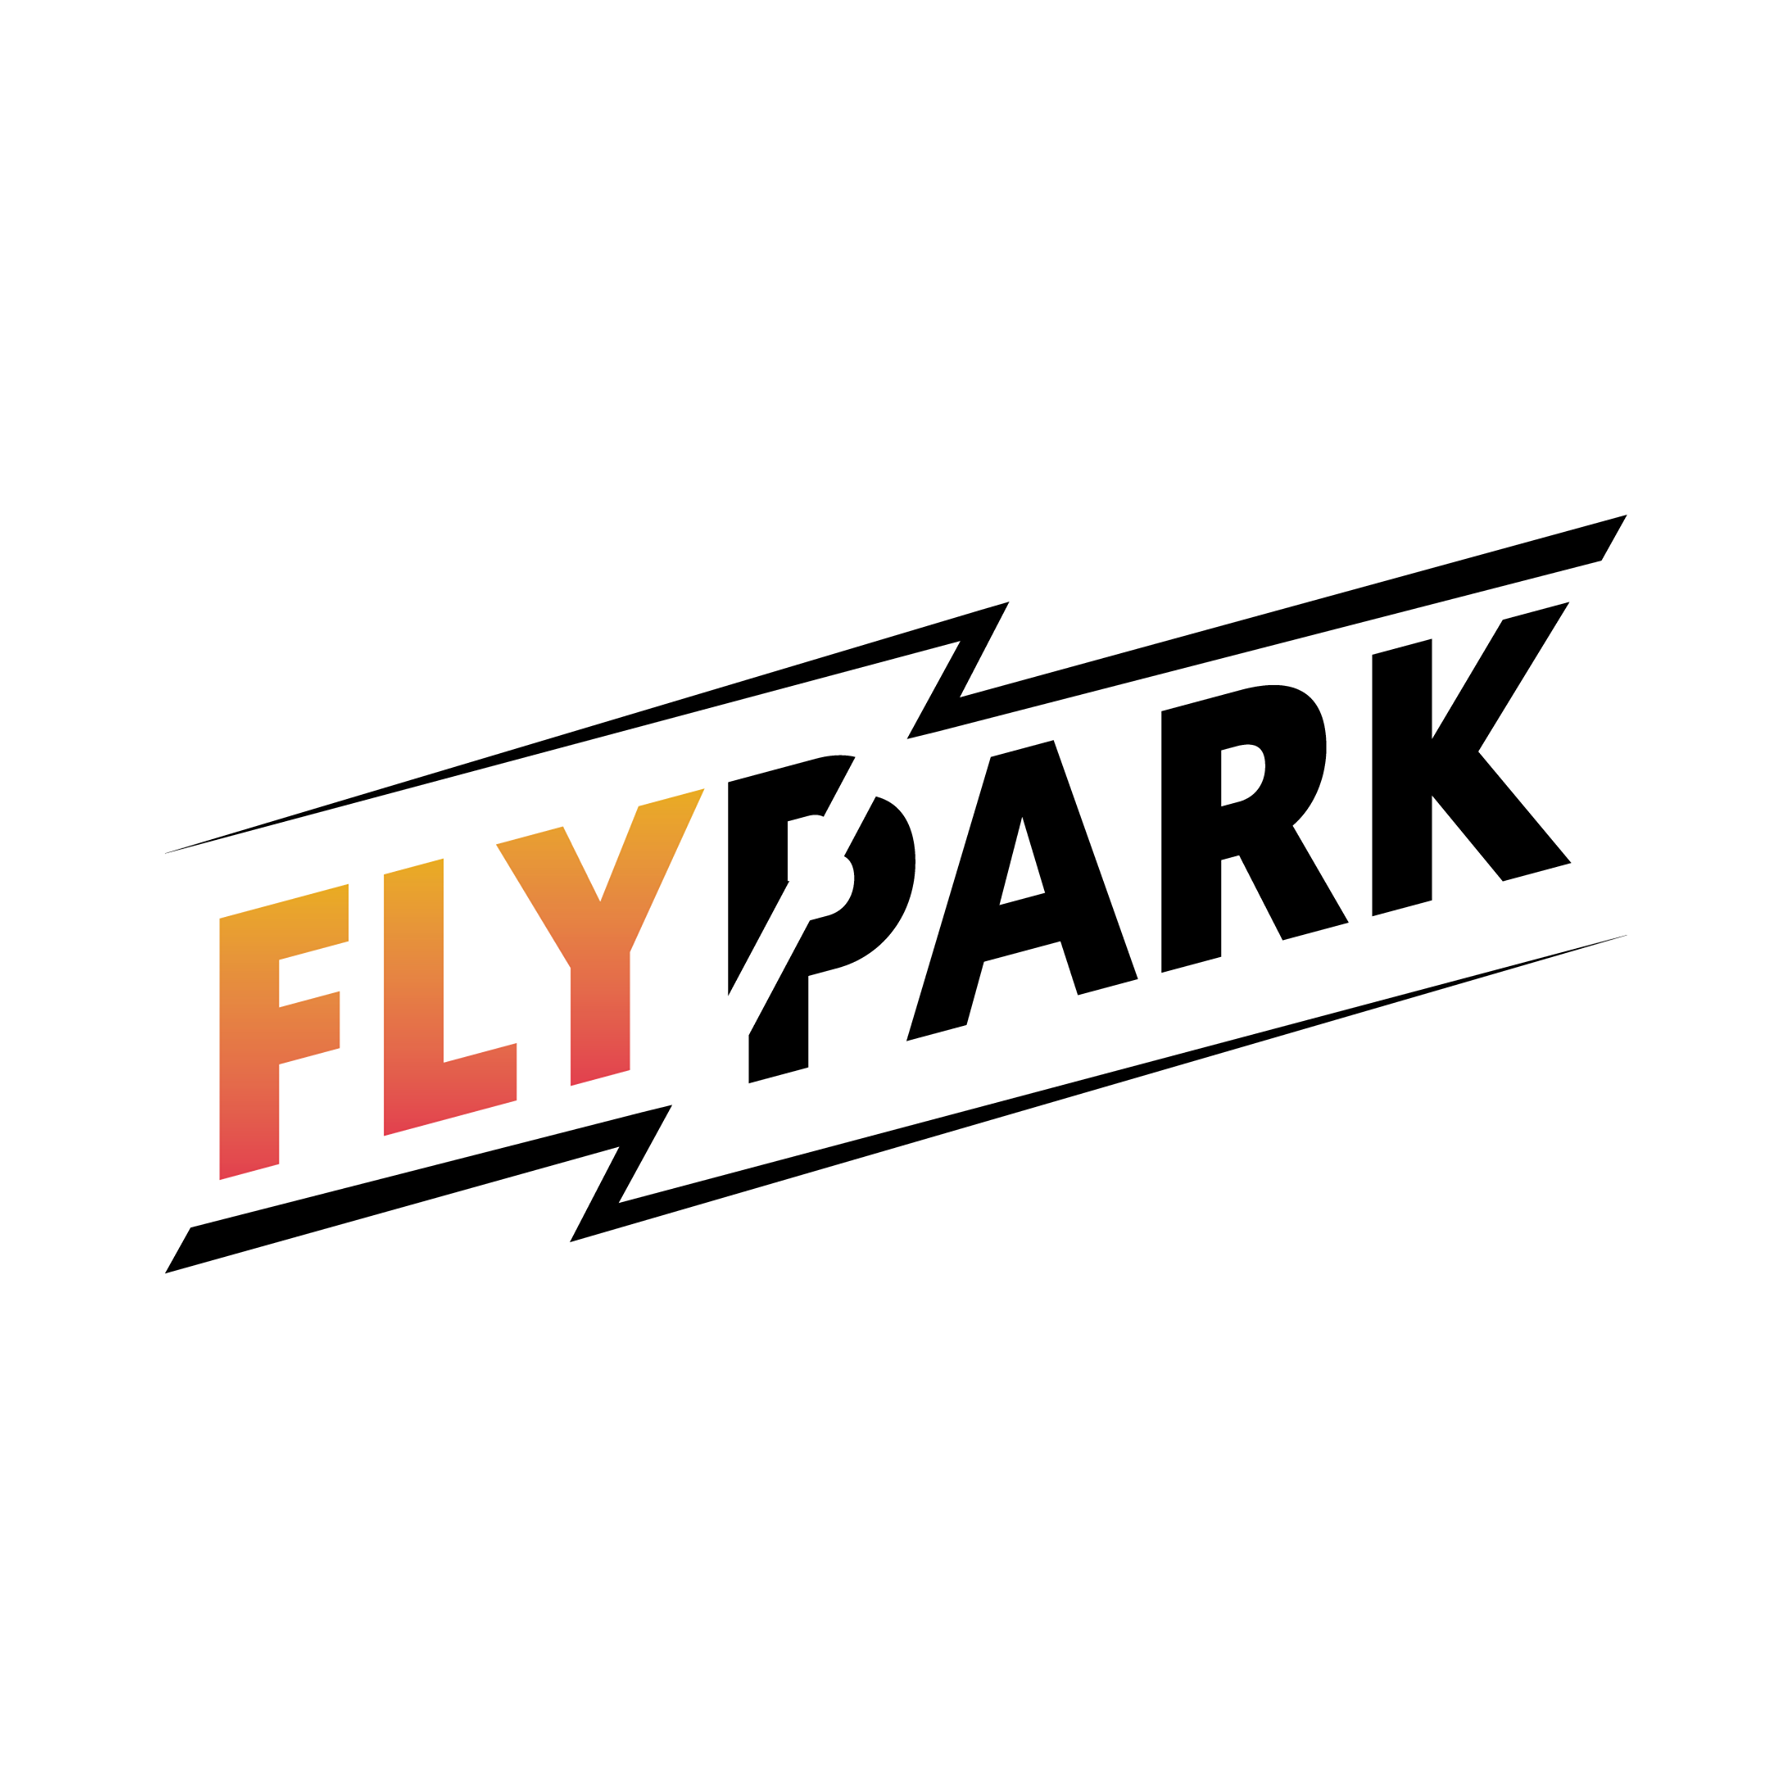 FlyPark Rzeszów infolinia | Dane kontaktowe, godziny otwarcia, adres